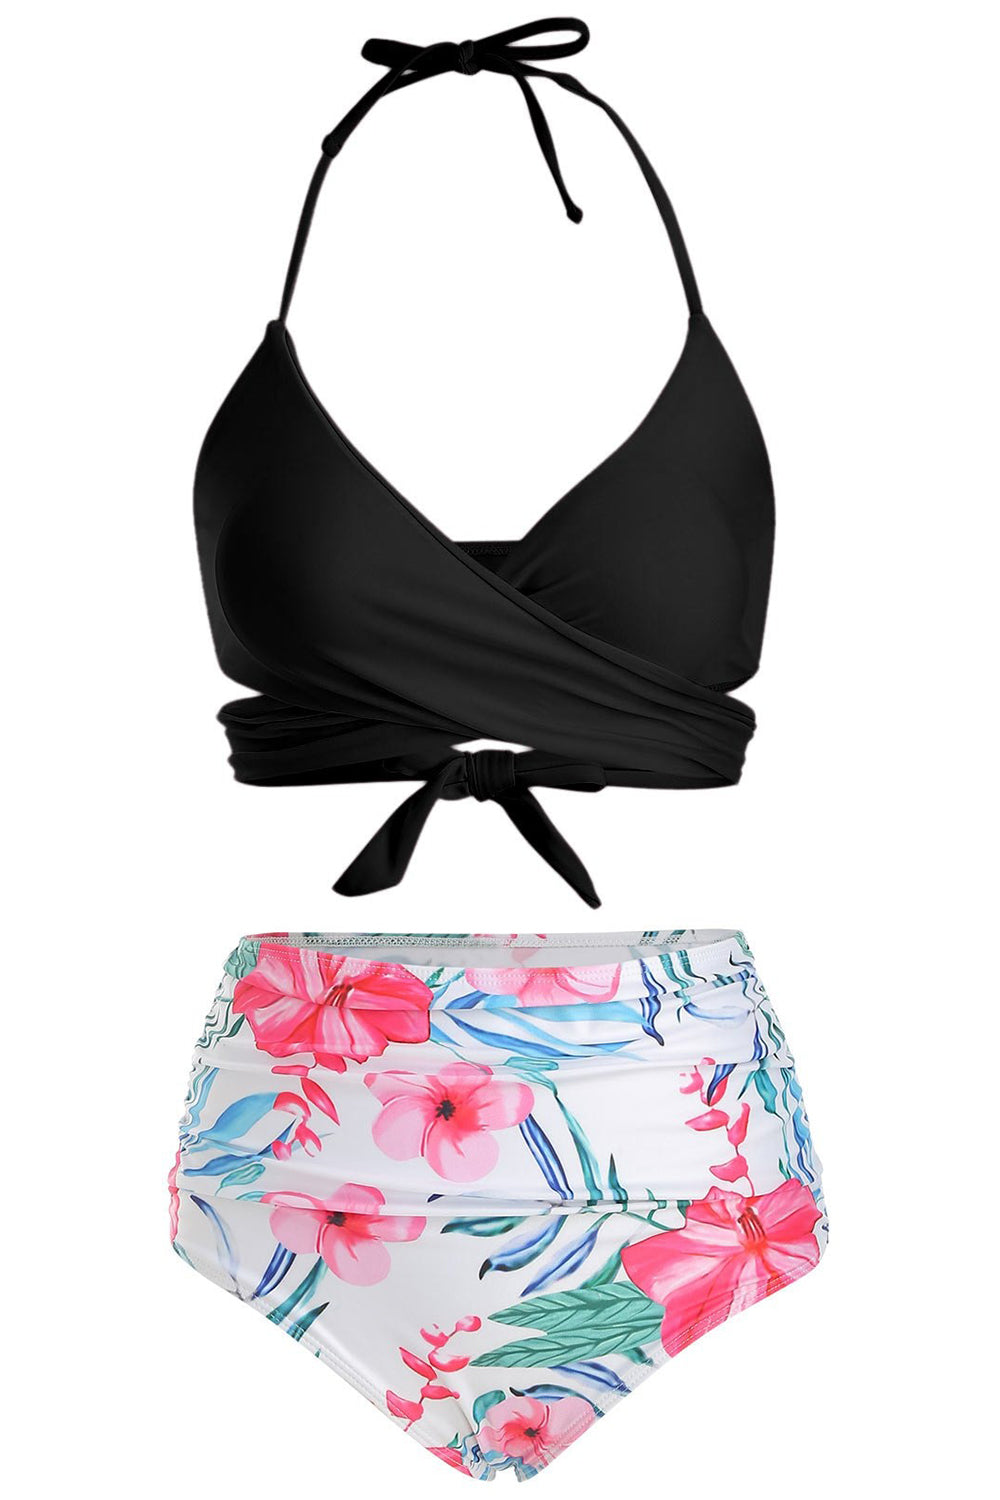 Floral Print Halter Wrap Bikini Swimsuit